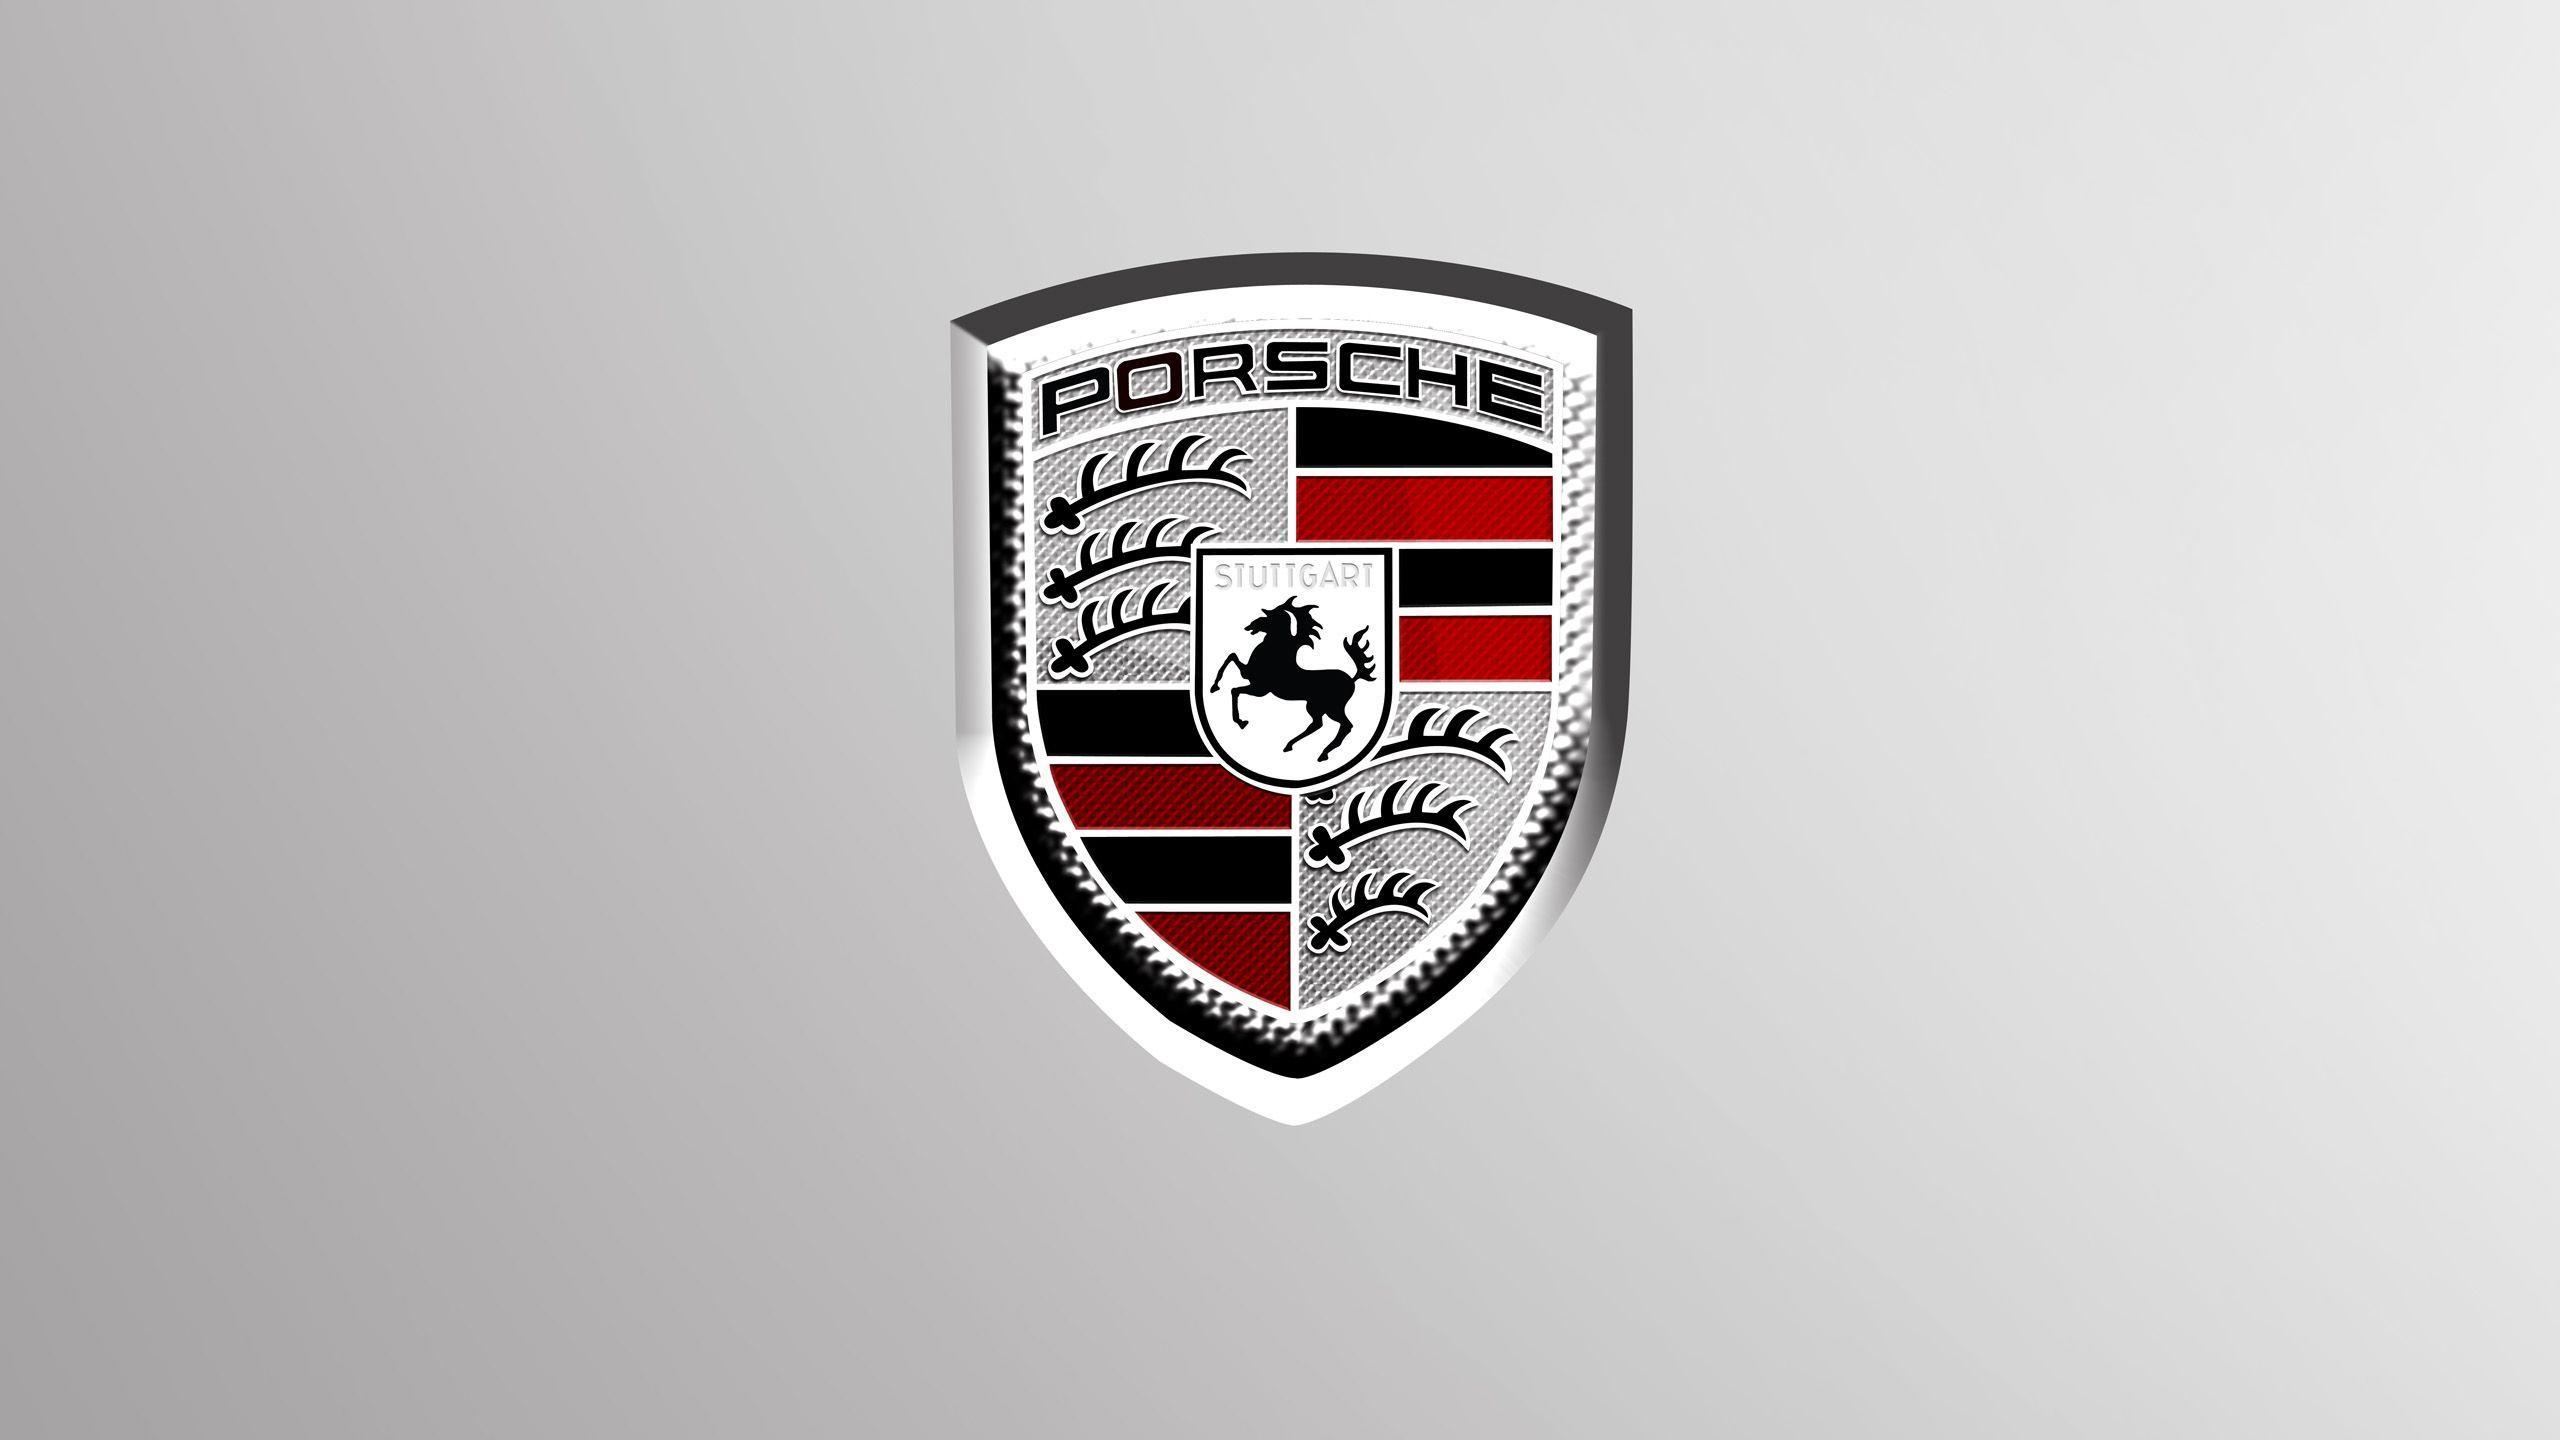 Porsche Emblem Wallpaper